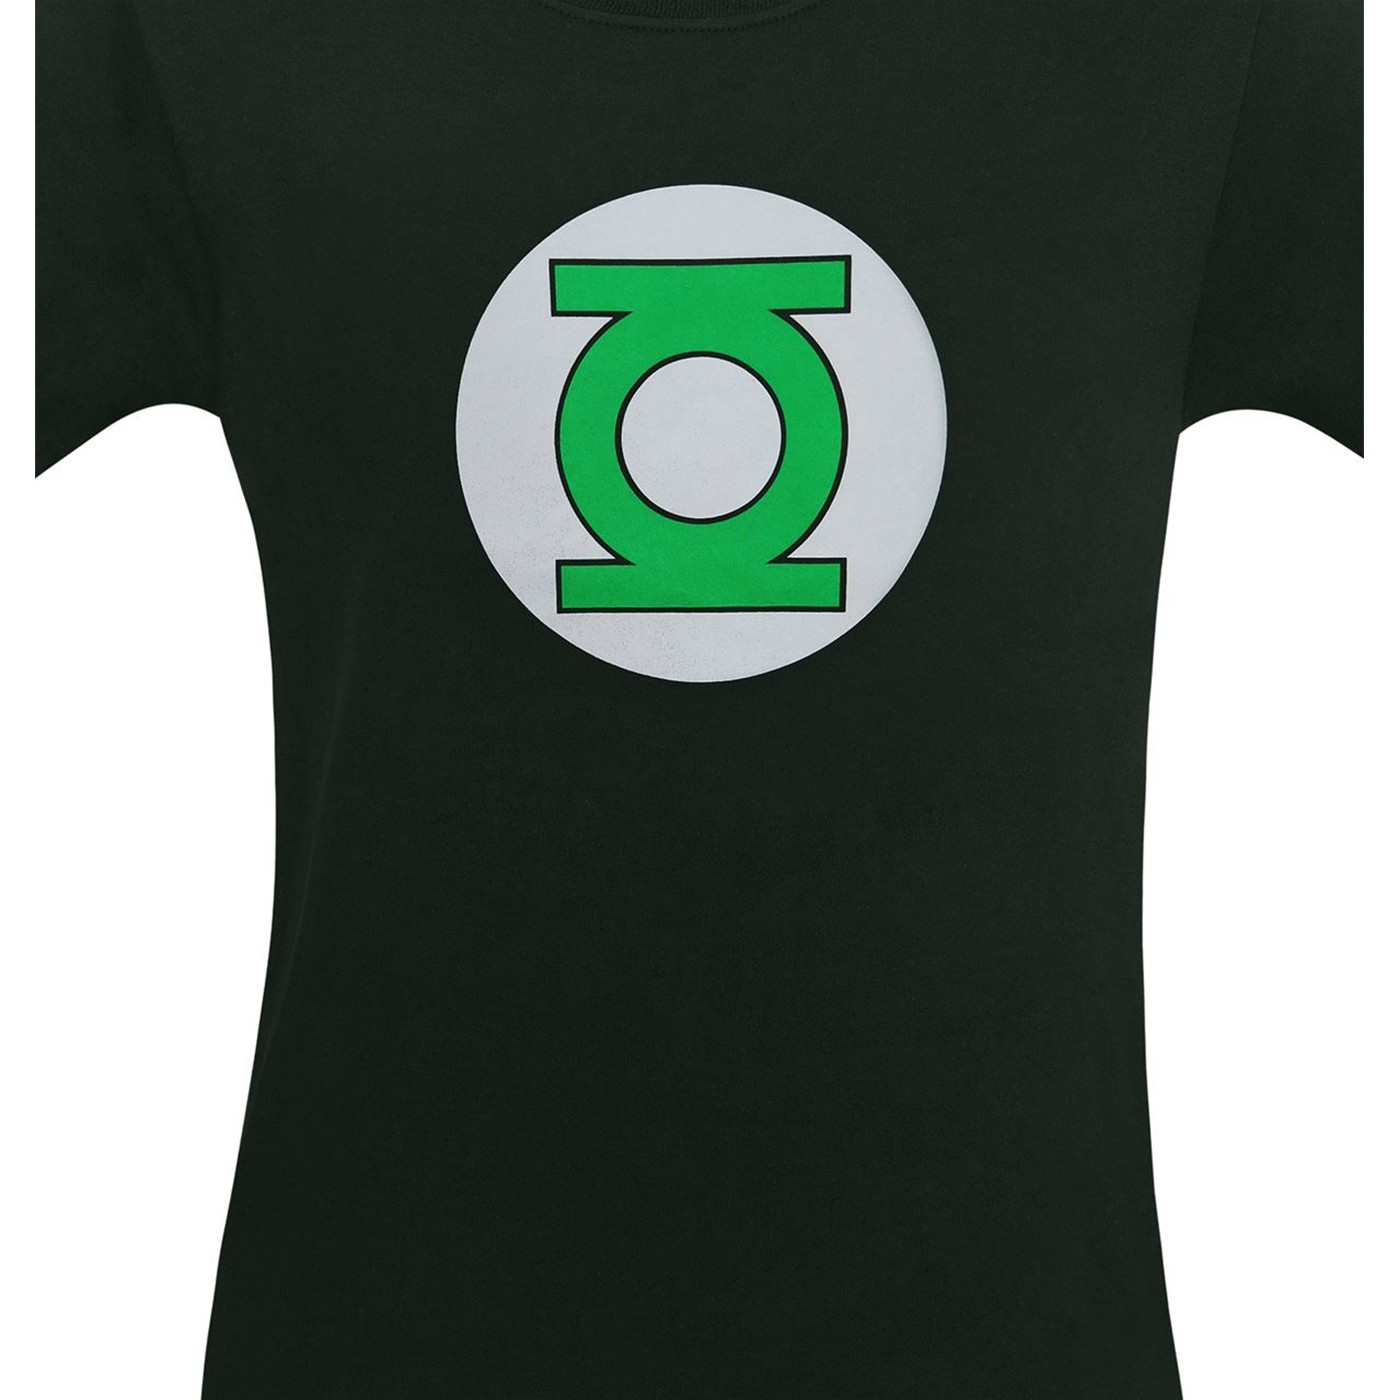 Green Lantern Symbol T-Shirt